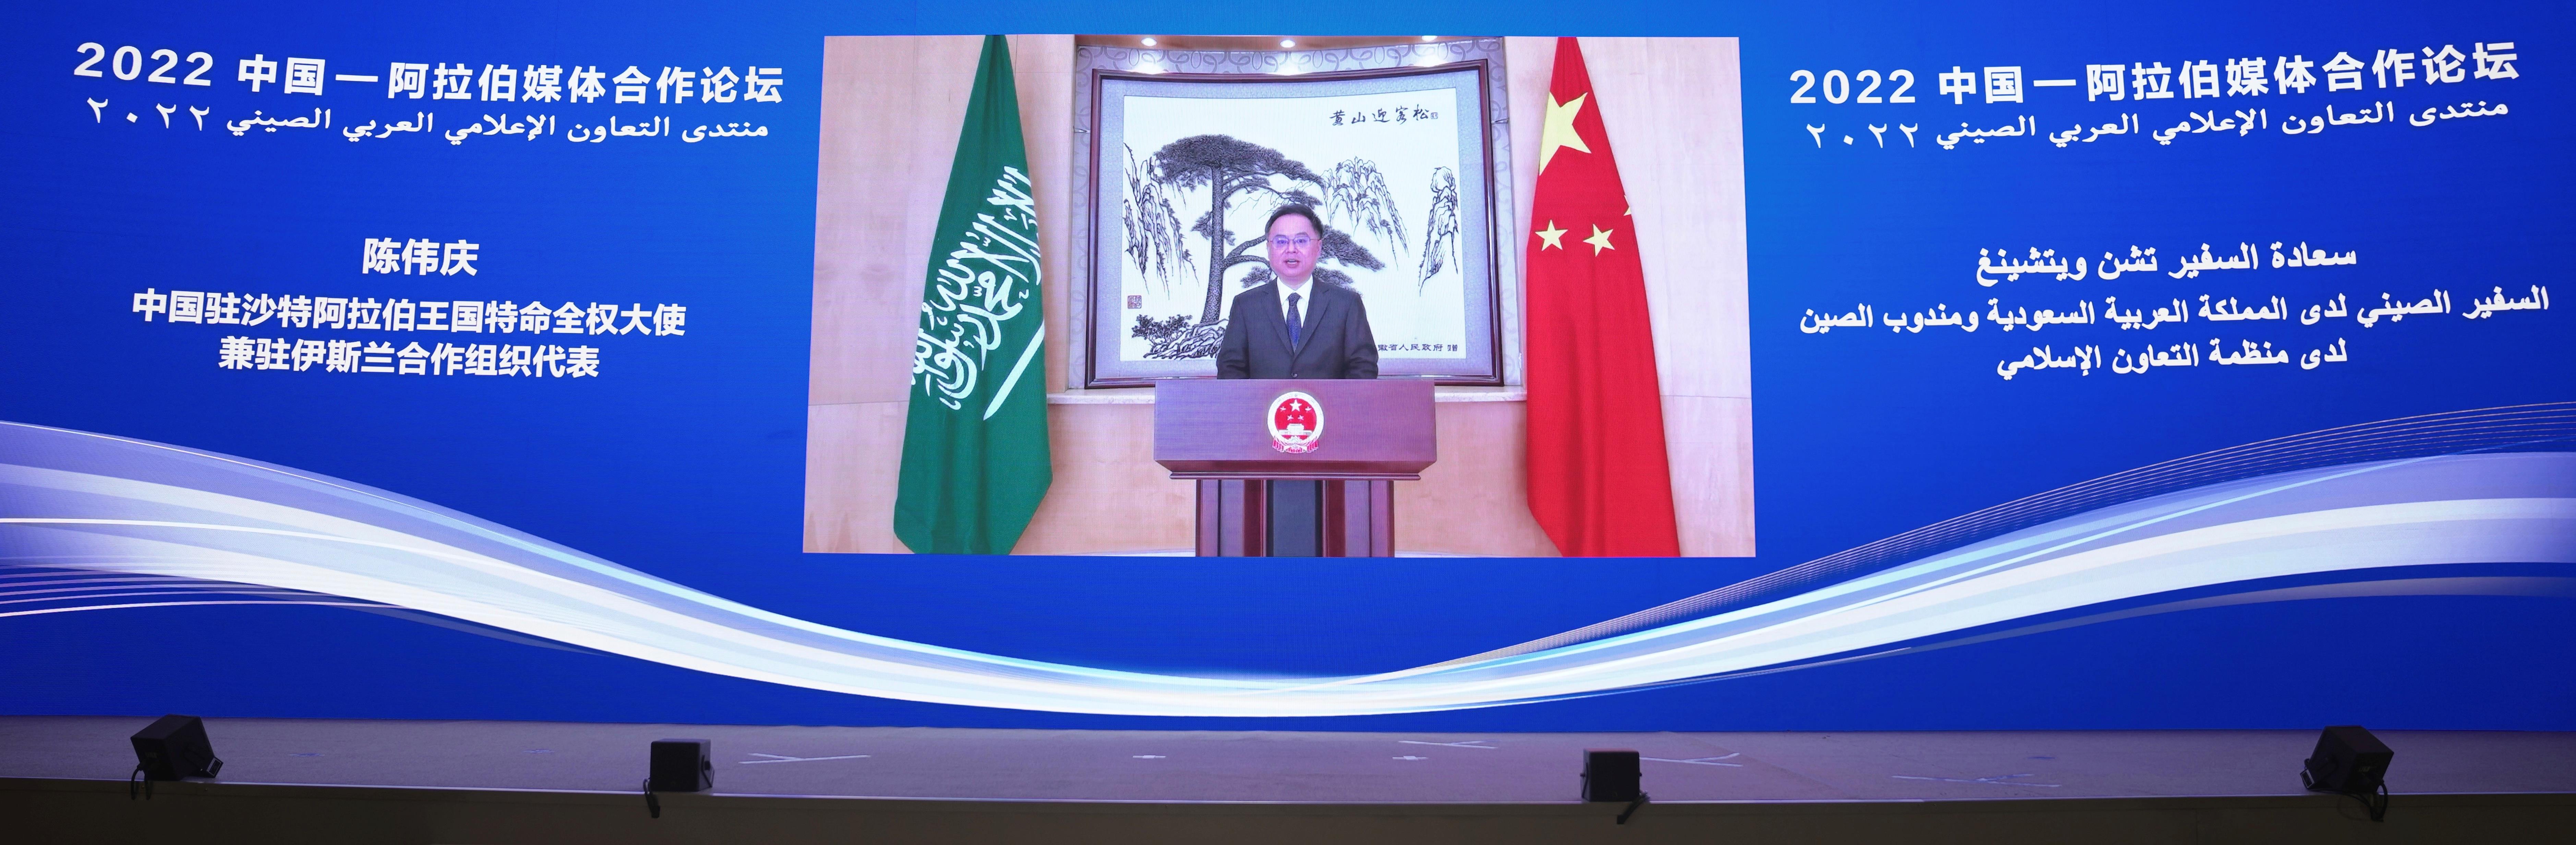 △中国驻沙特大使兼驻伊斯兰合作组织代表陈伟庆